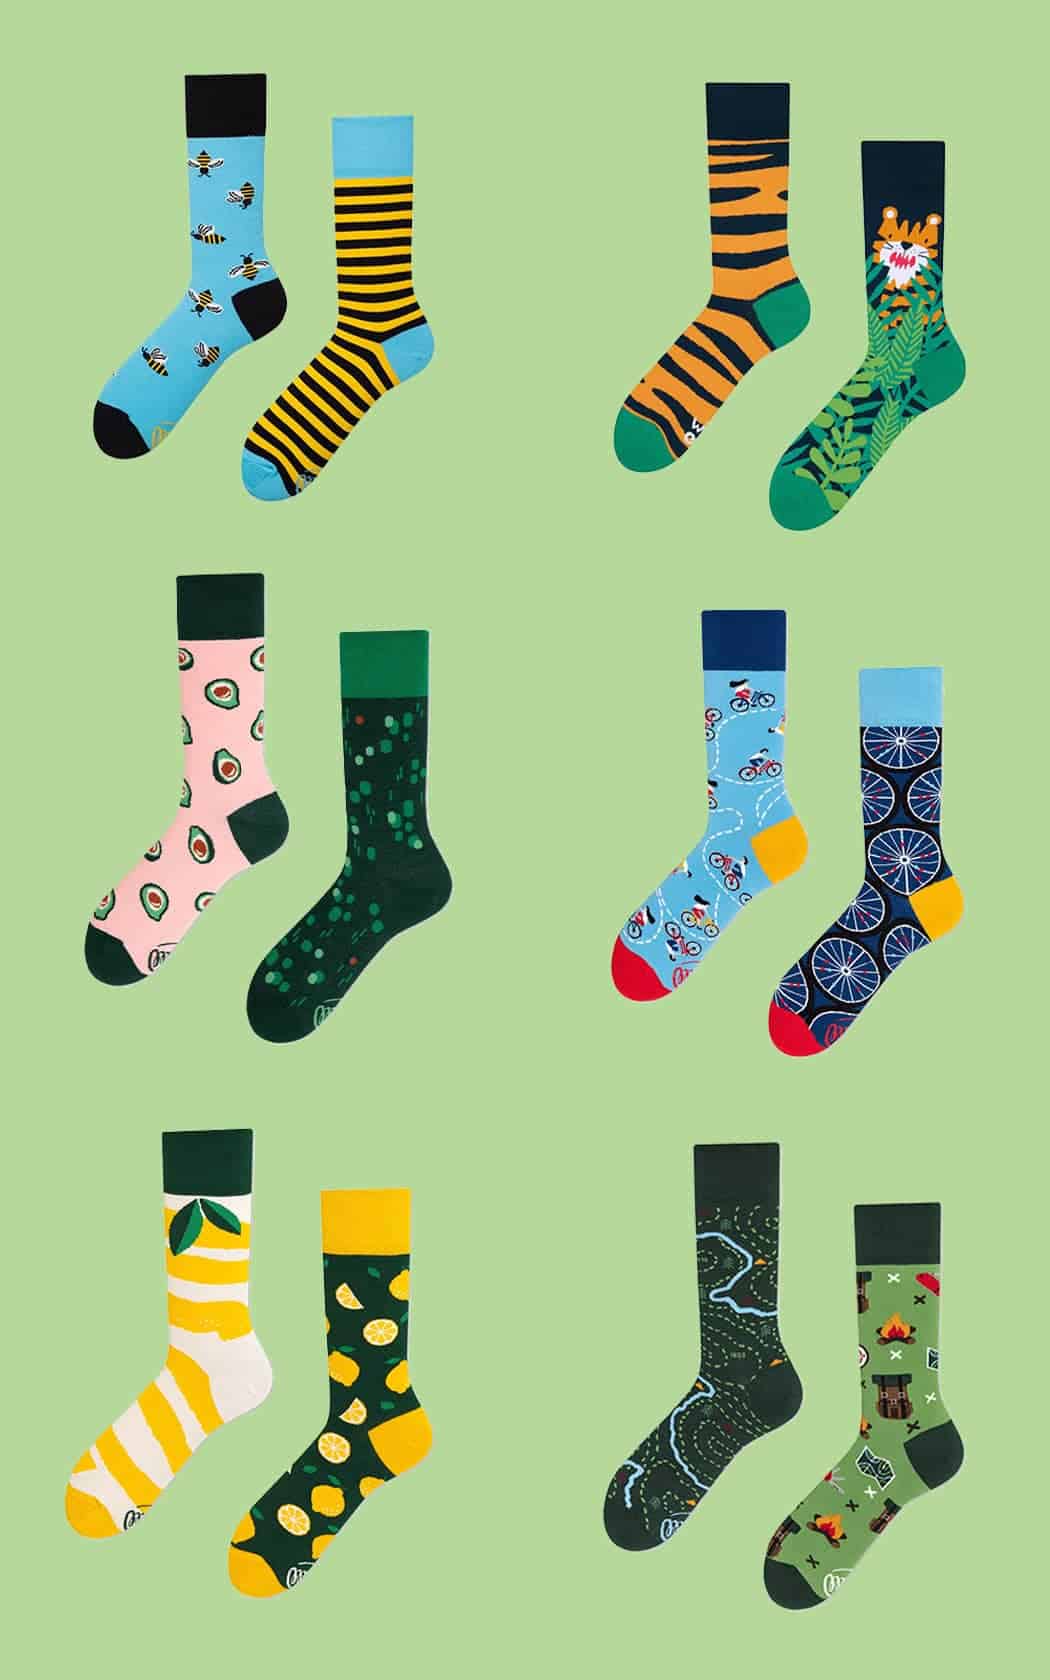 Leuke sokken - 5 x inspiratie voor toffe sokken - Mismatched sokken - door Laurens M - via AGMJ.be